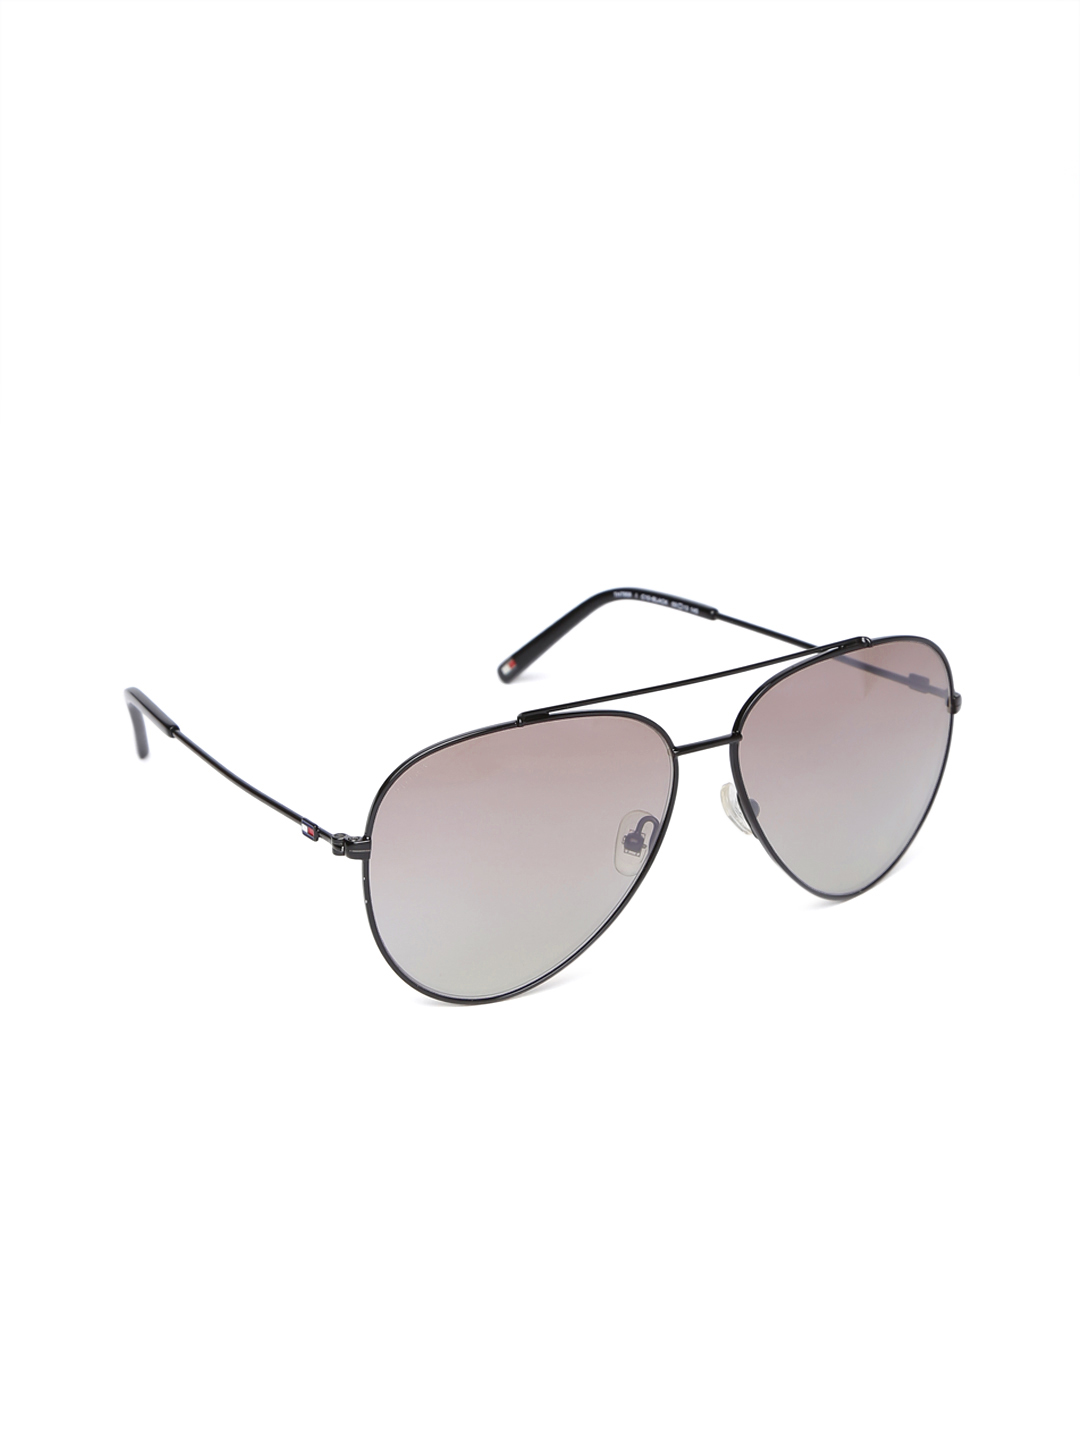 Aviator Sunglasses Drawing at GetDrawings | Free download